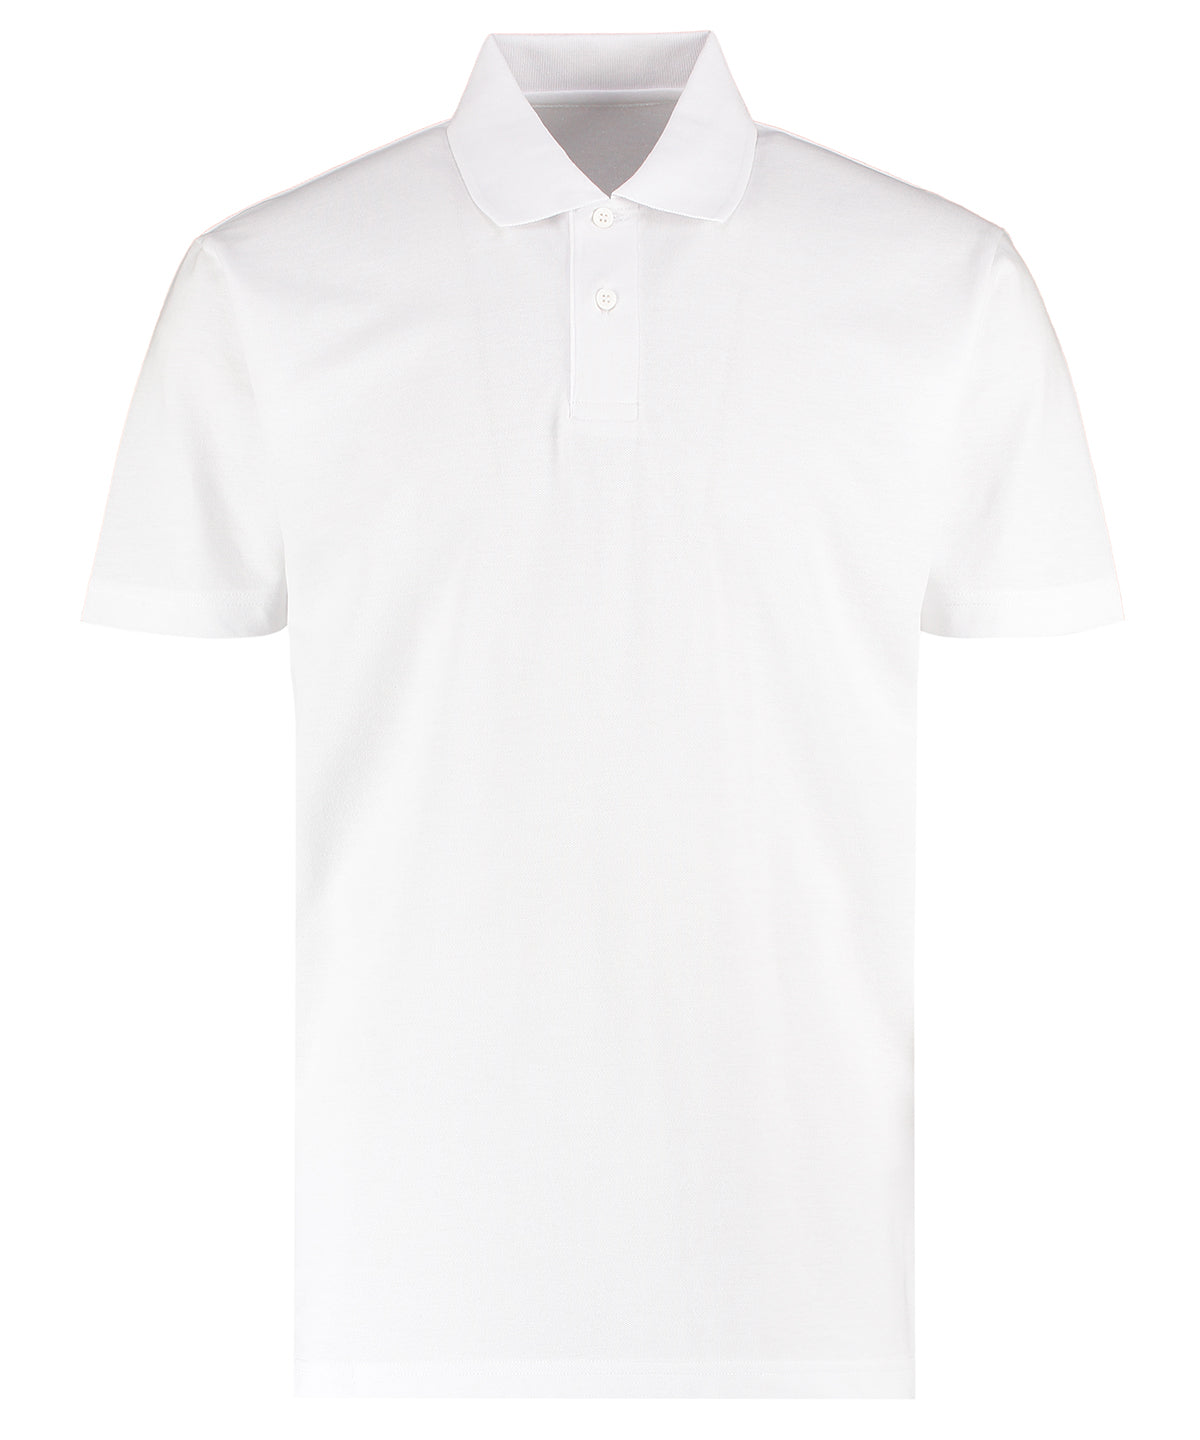 Personalised Polo Shirts - Bottle Kustom Kit Workforce polo (regular fit)